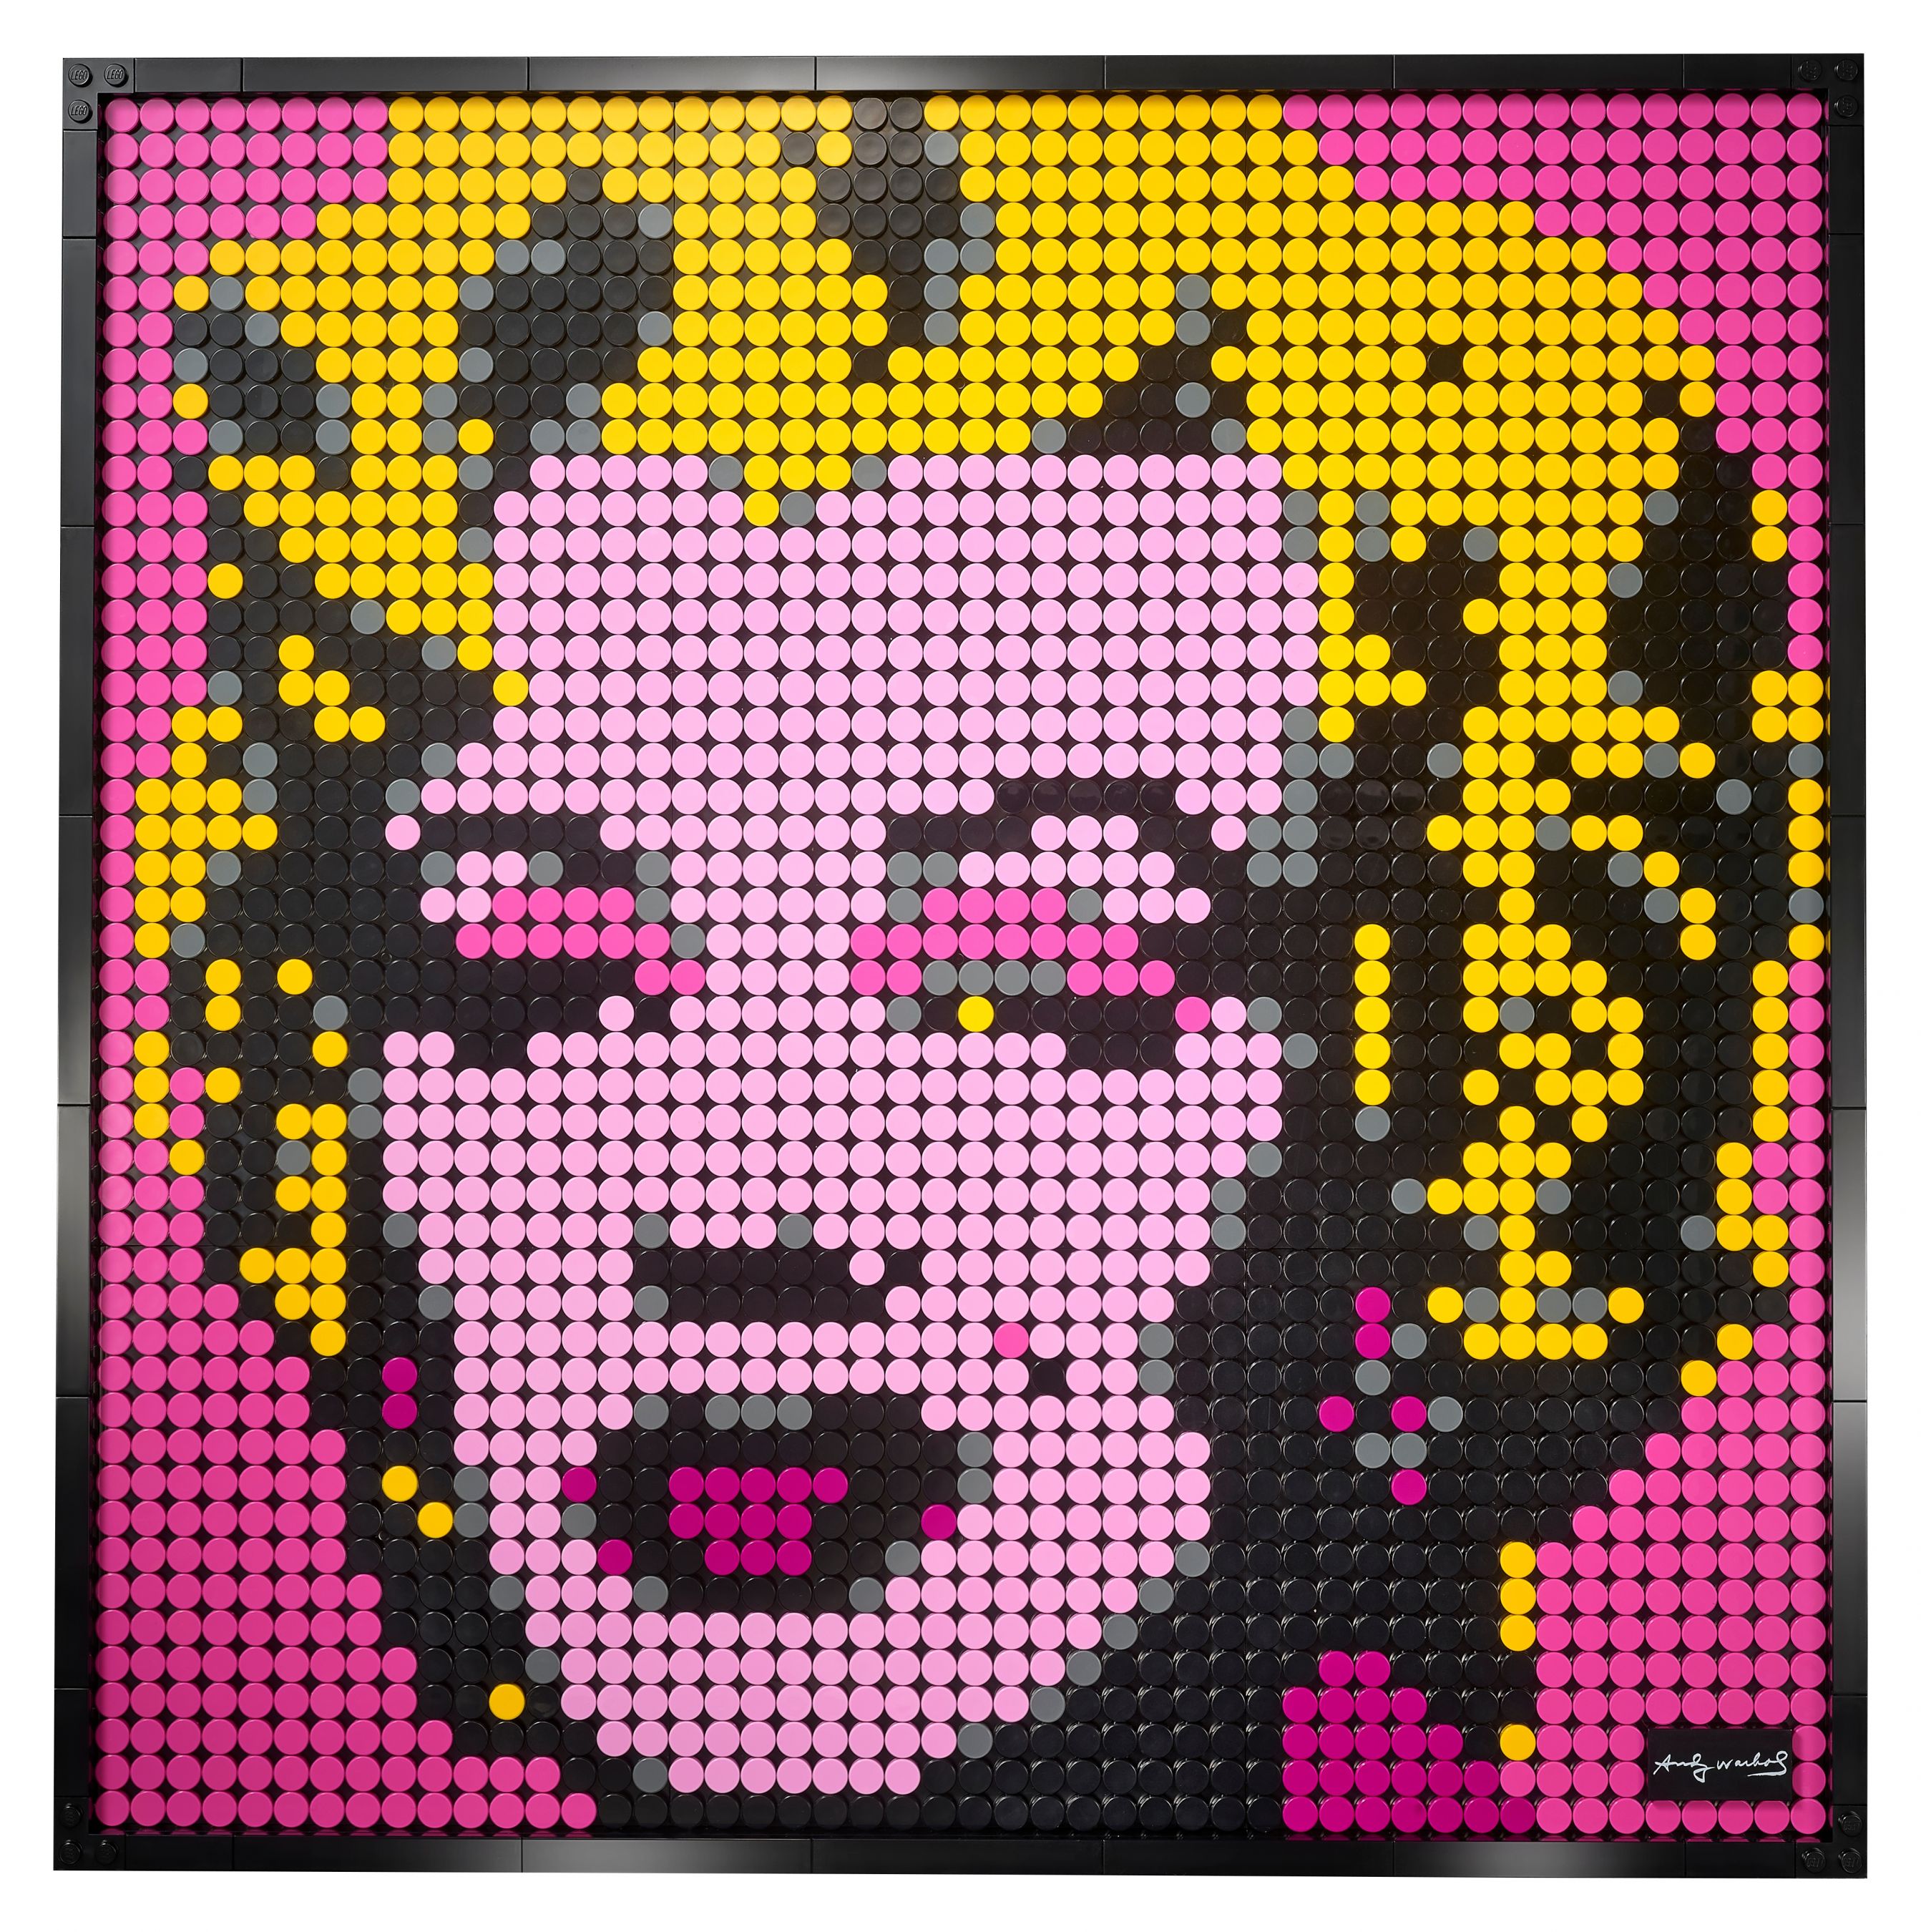 LEGO Art 31197 Andy Warhol's Marilyn Monroe LEGO_31197_alt8.jpg